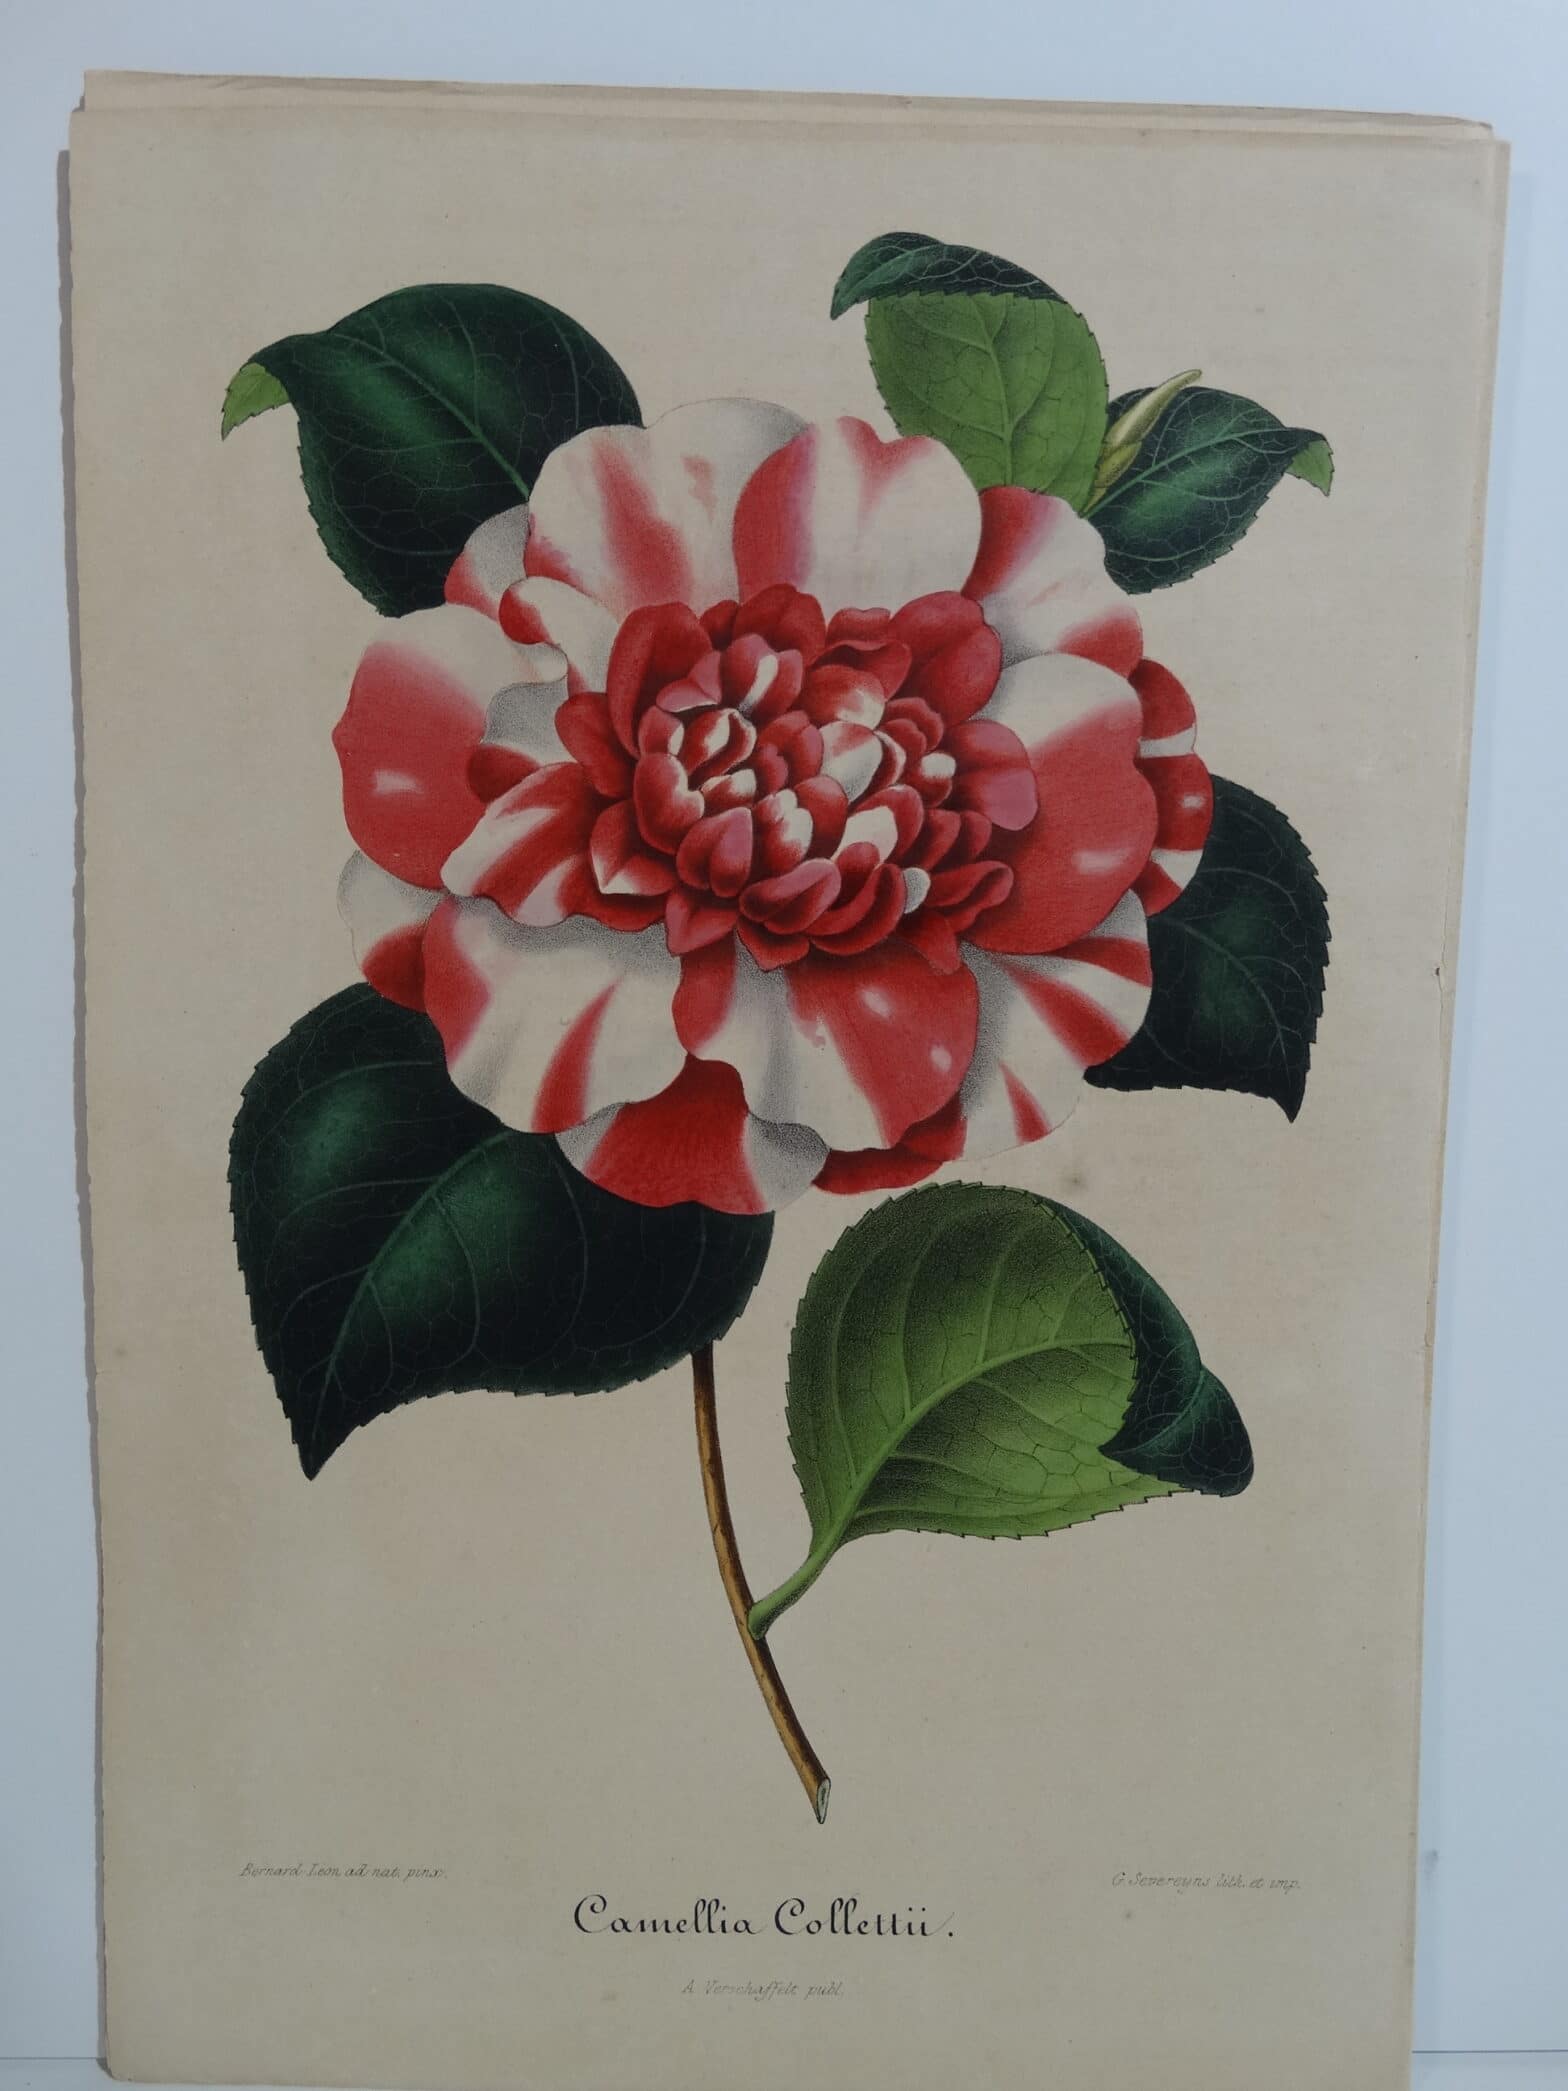 camellias-family-theaceae-genus-camellia8